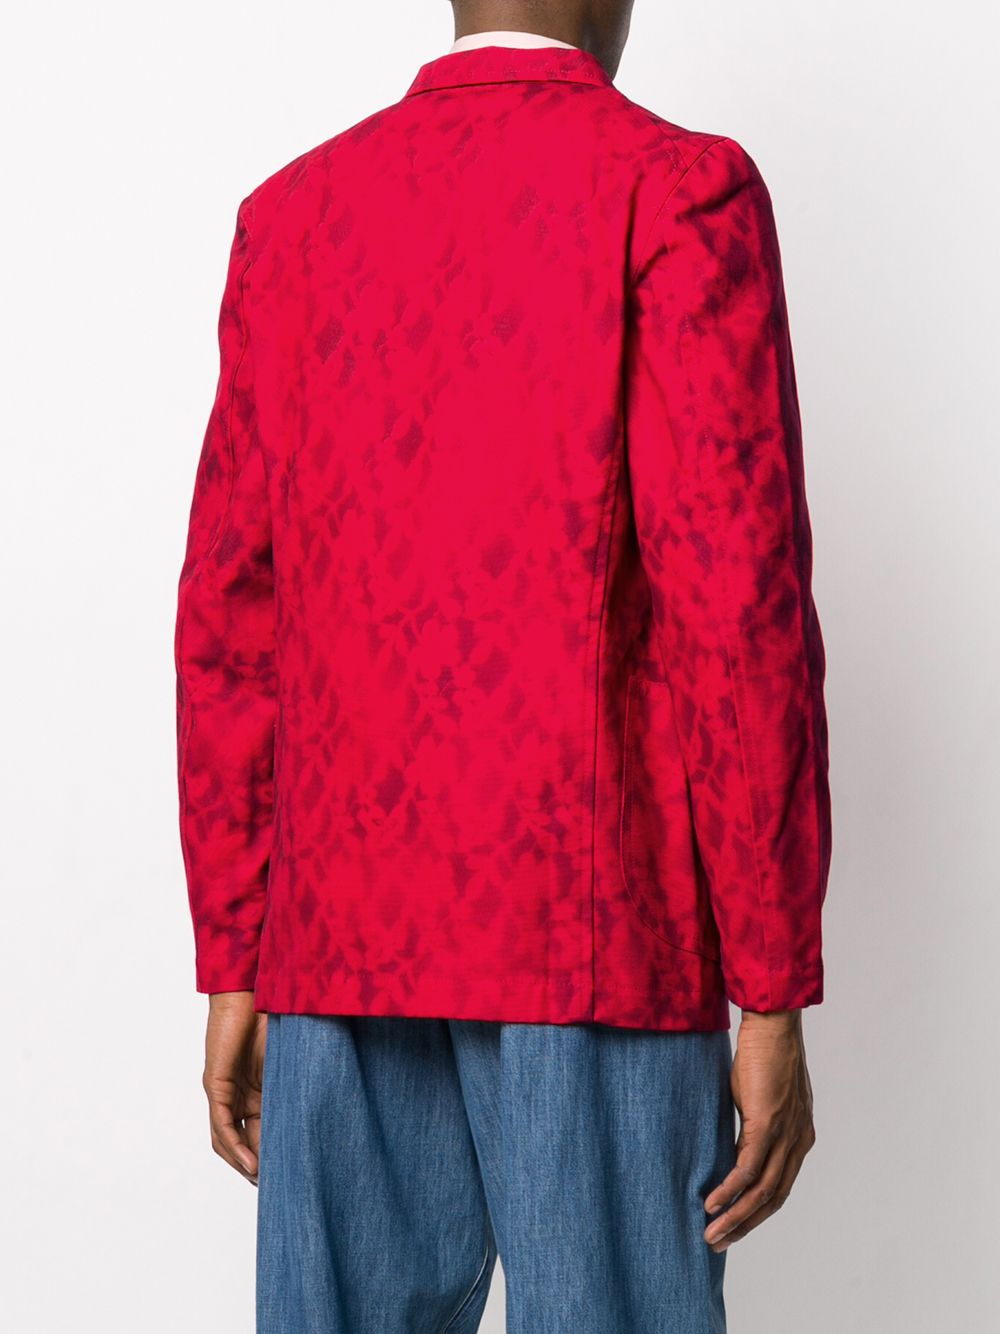 фото Comme des garçons shirt пиджак с цветочным принтом